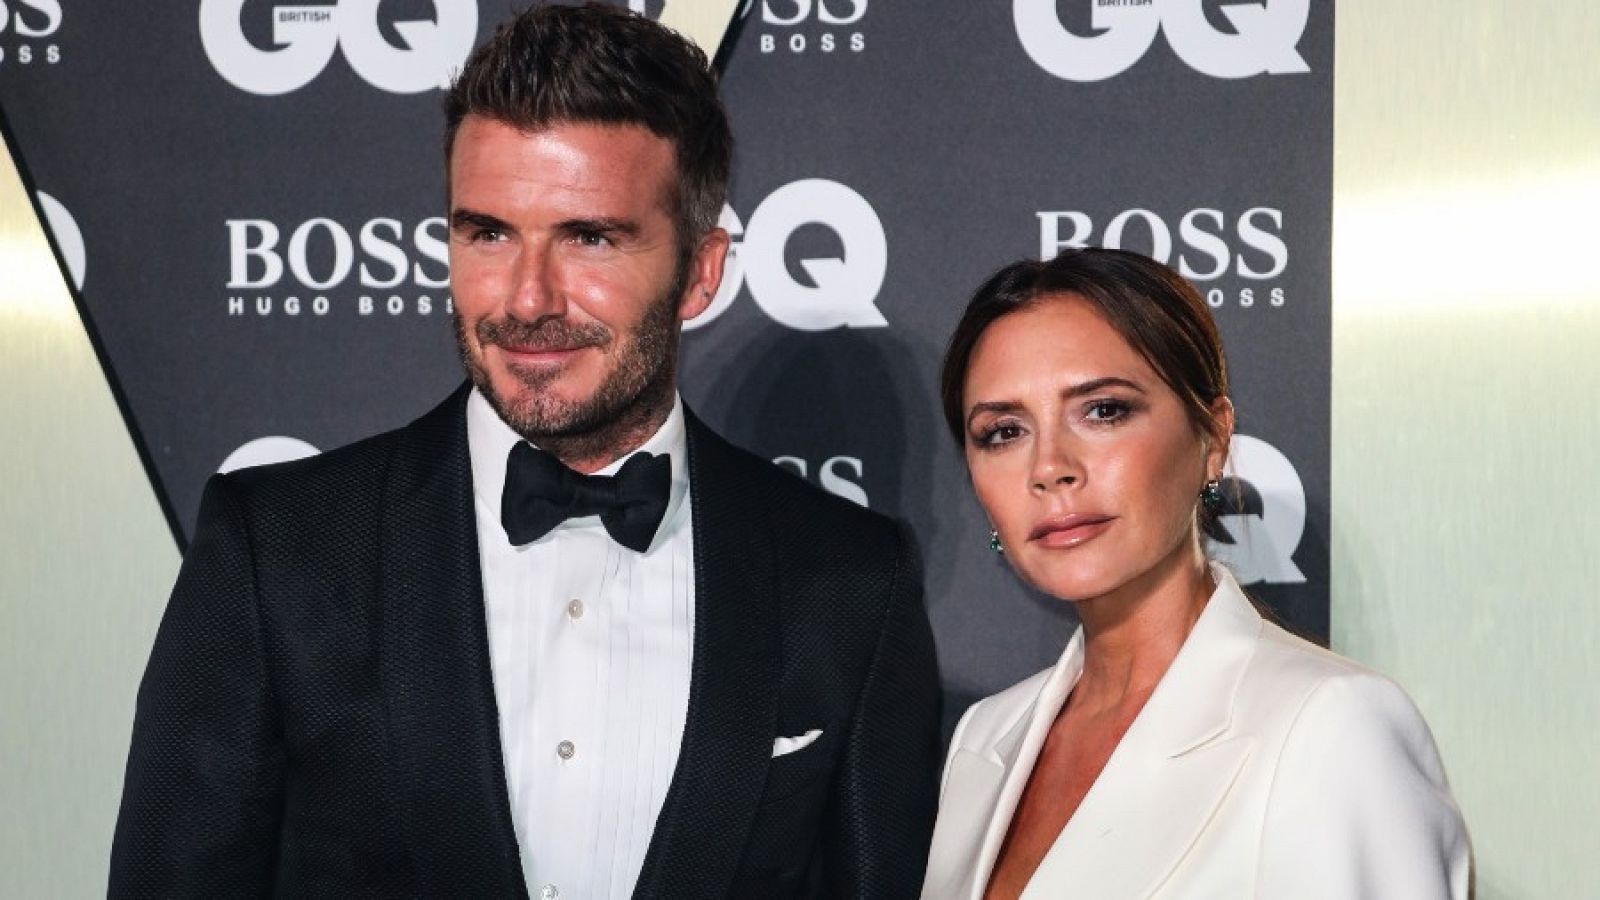 El matrimonio Beckham proclaman su amor en las redes sociales